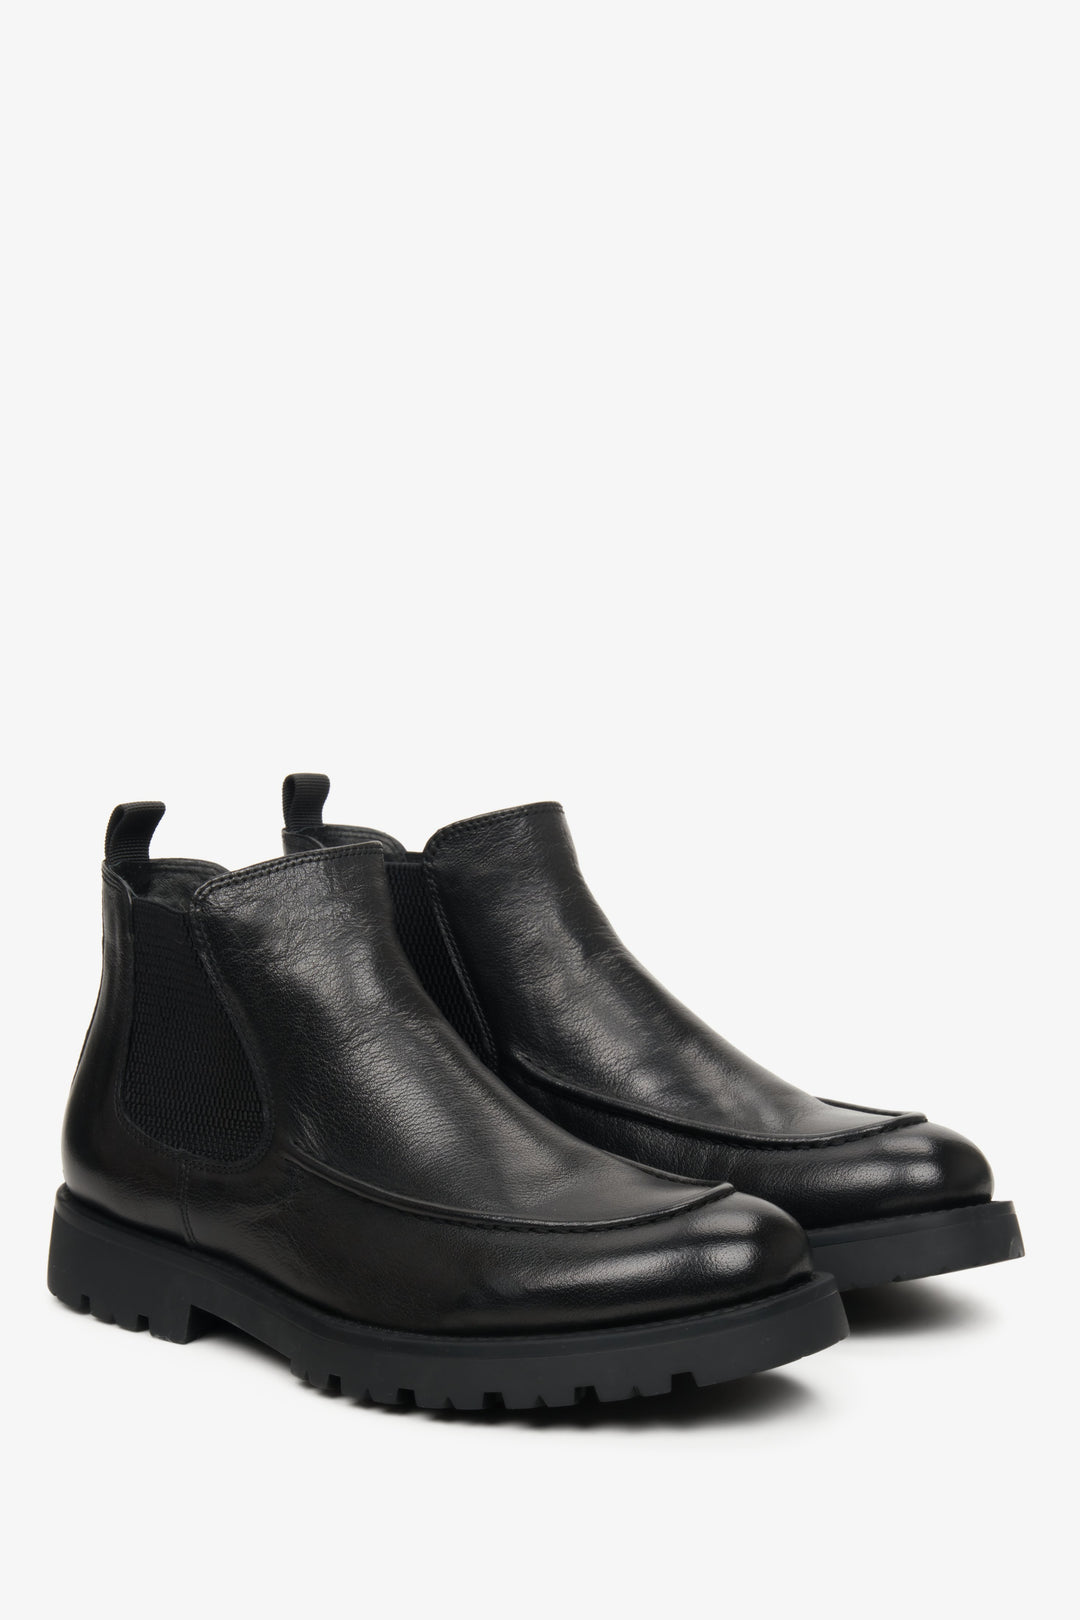 Men's black ankle boots by Estro - shoe profile.